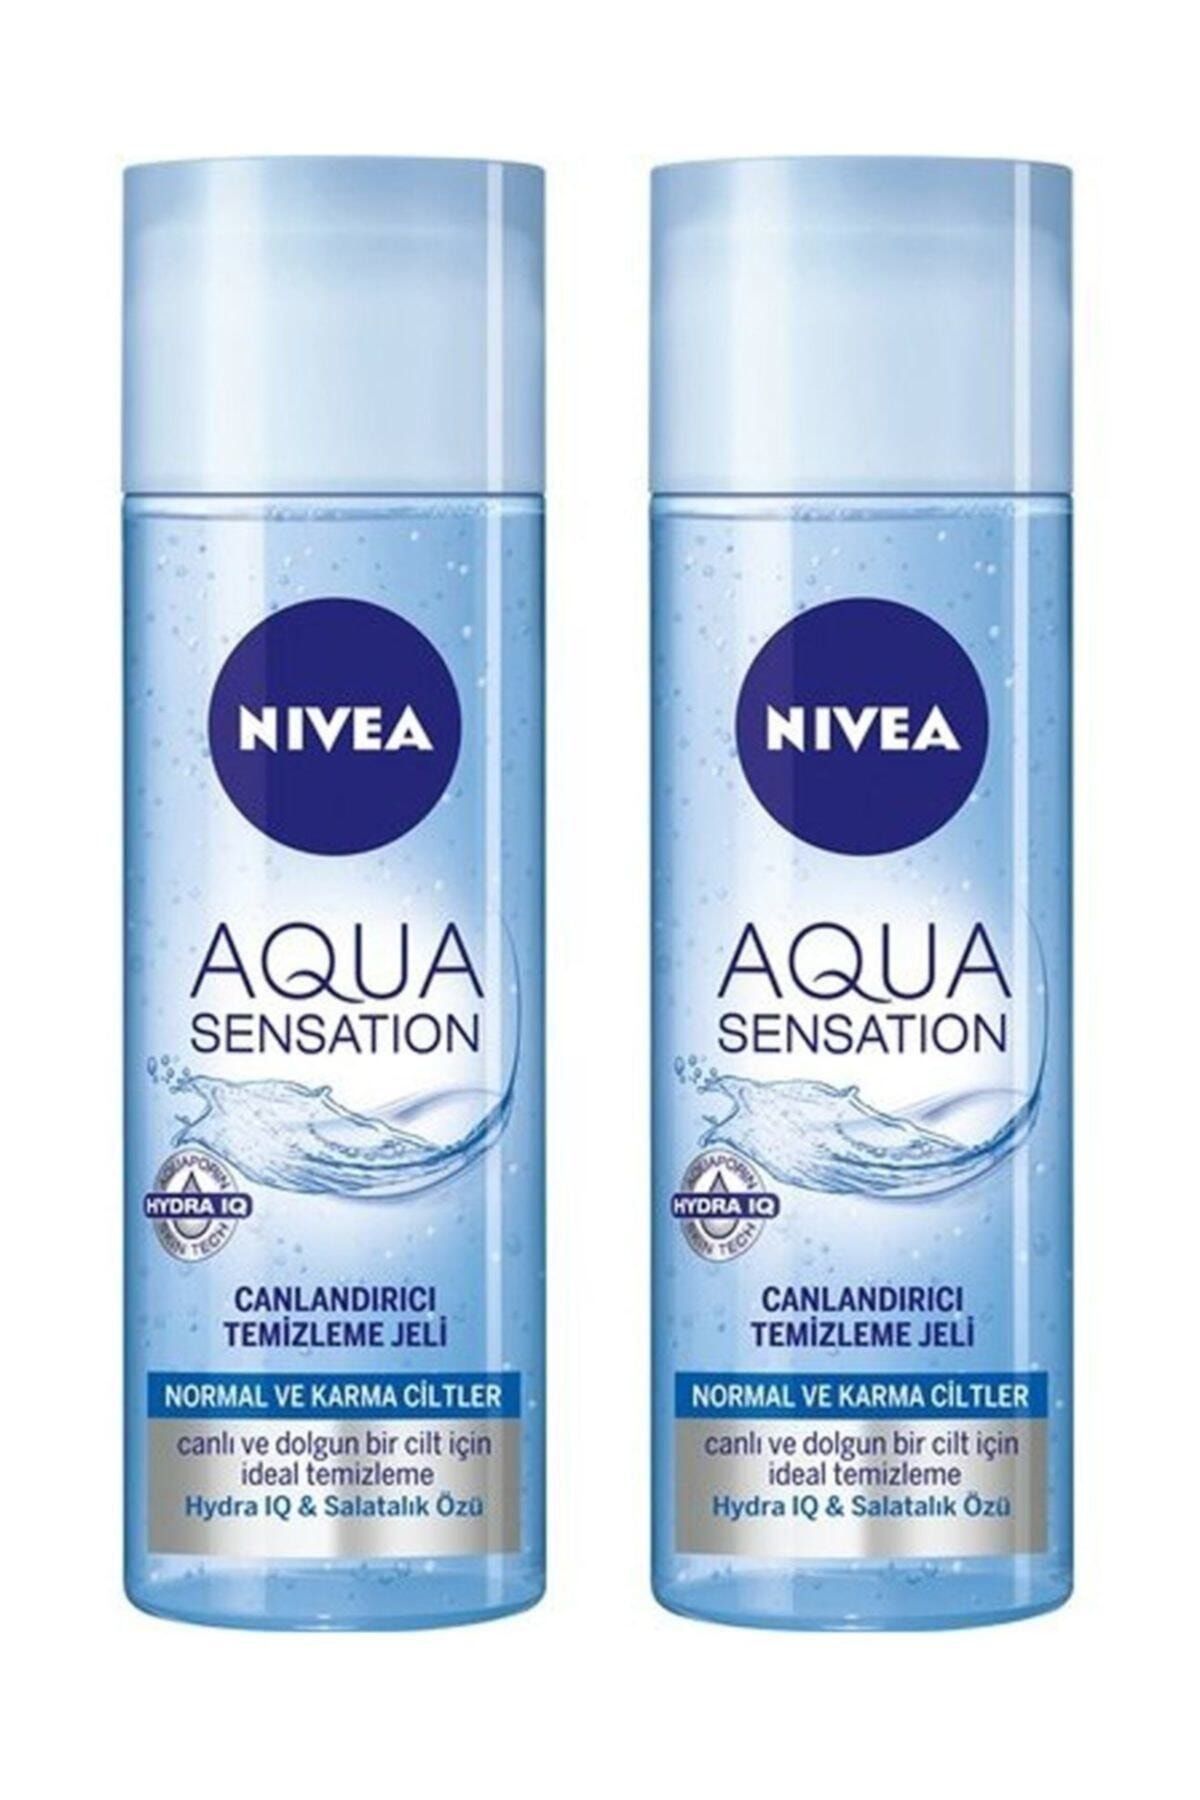 NIVEA Aqua Sensation Normal/karma Ciltler Için Canlandırıcı Temizleme Jeli 200 Ml X 2 Adet